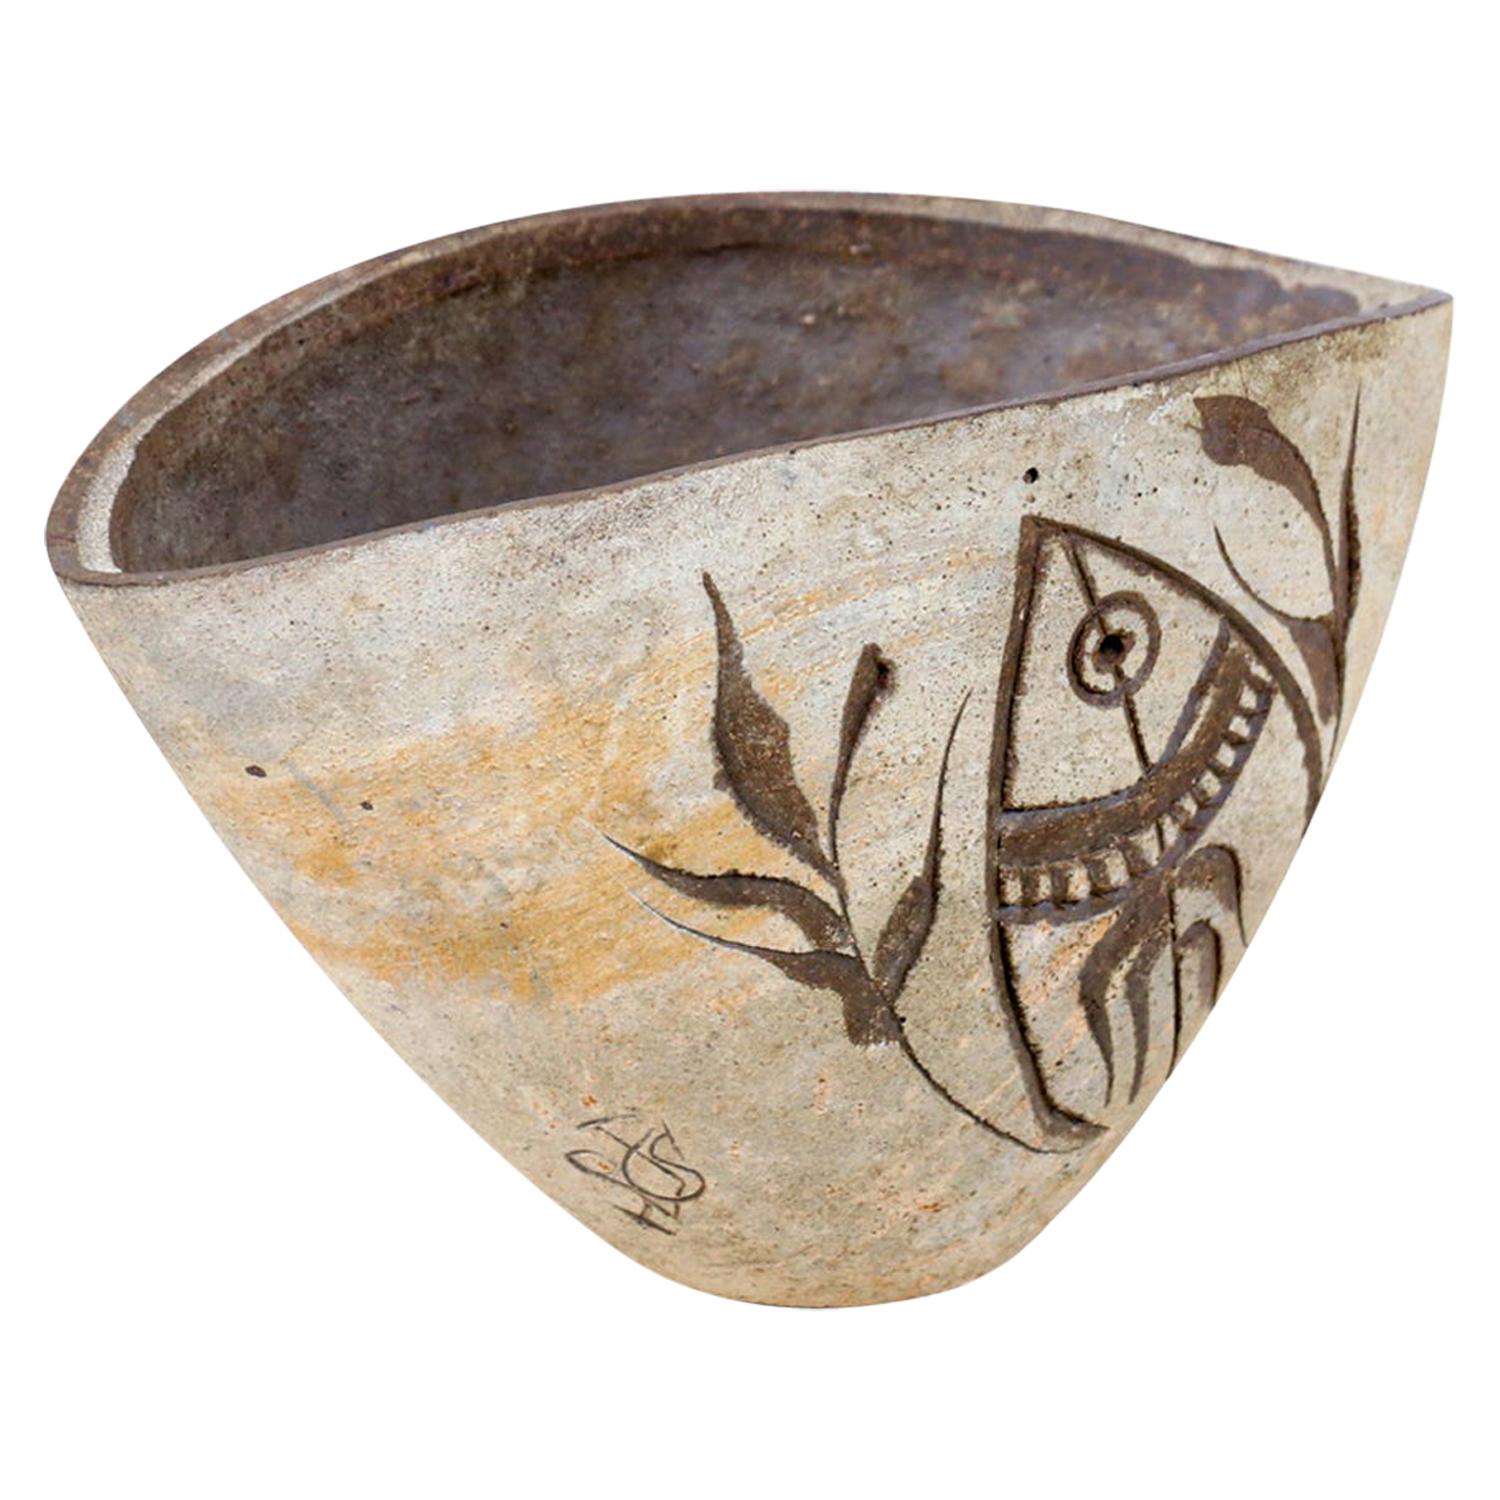 Paolo Soleri Ceramic Pottery Vessel from Arcosanti